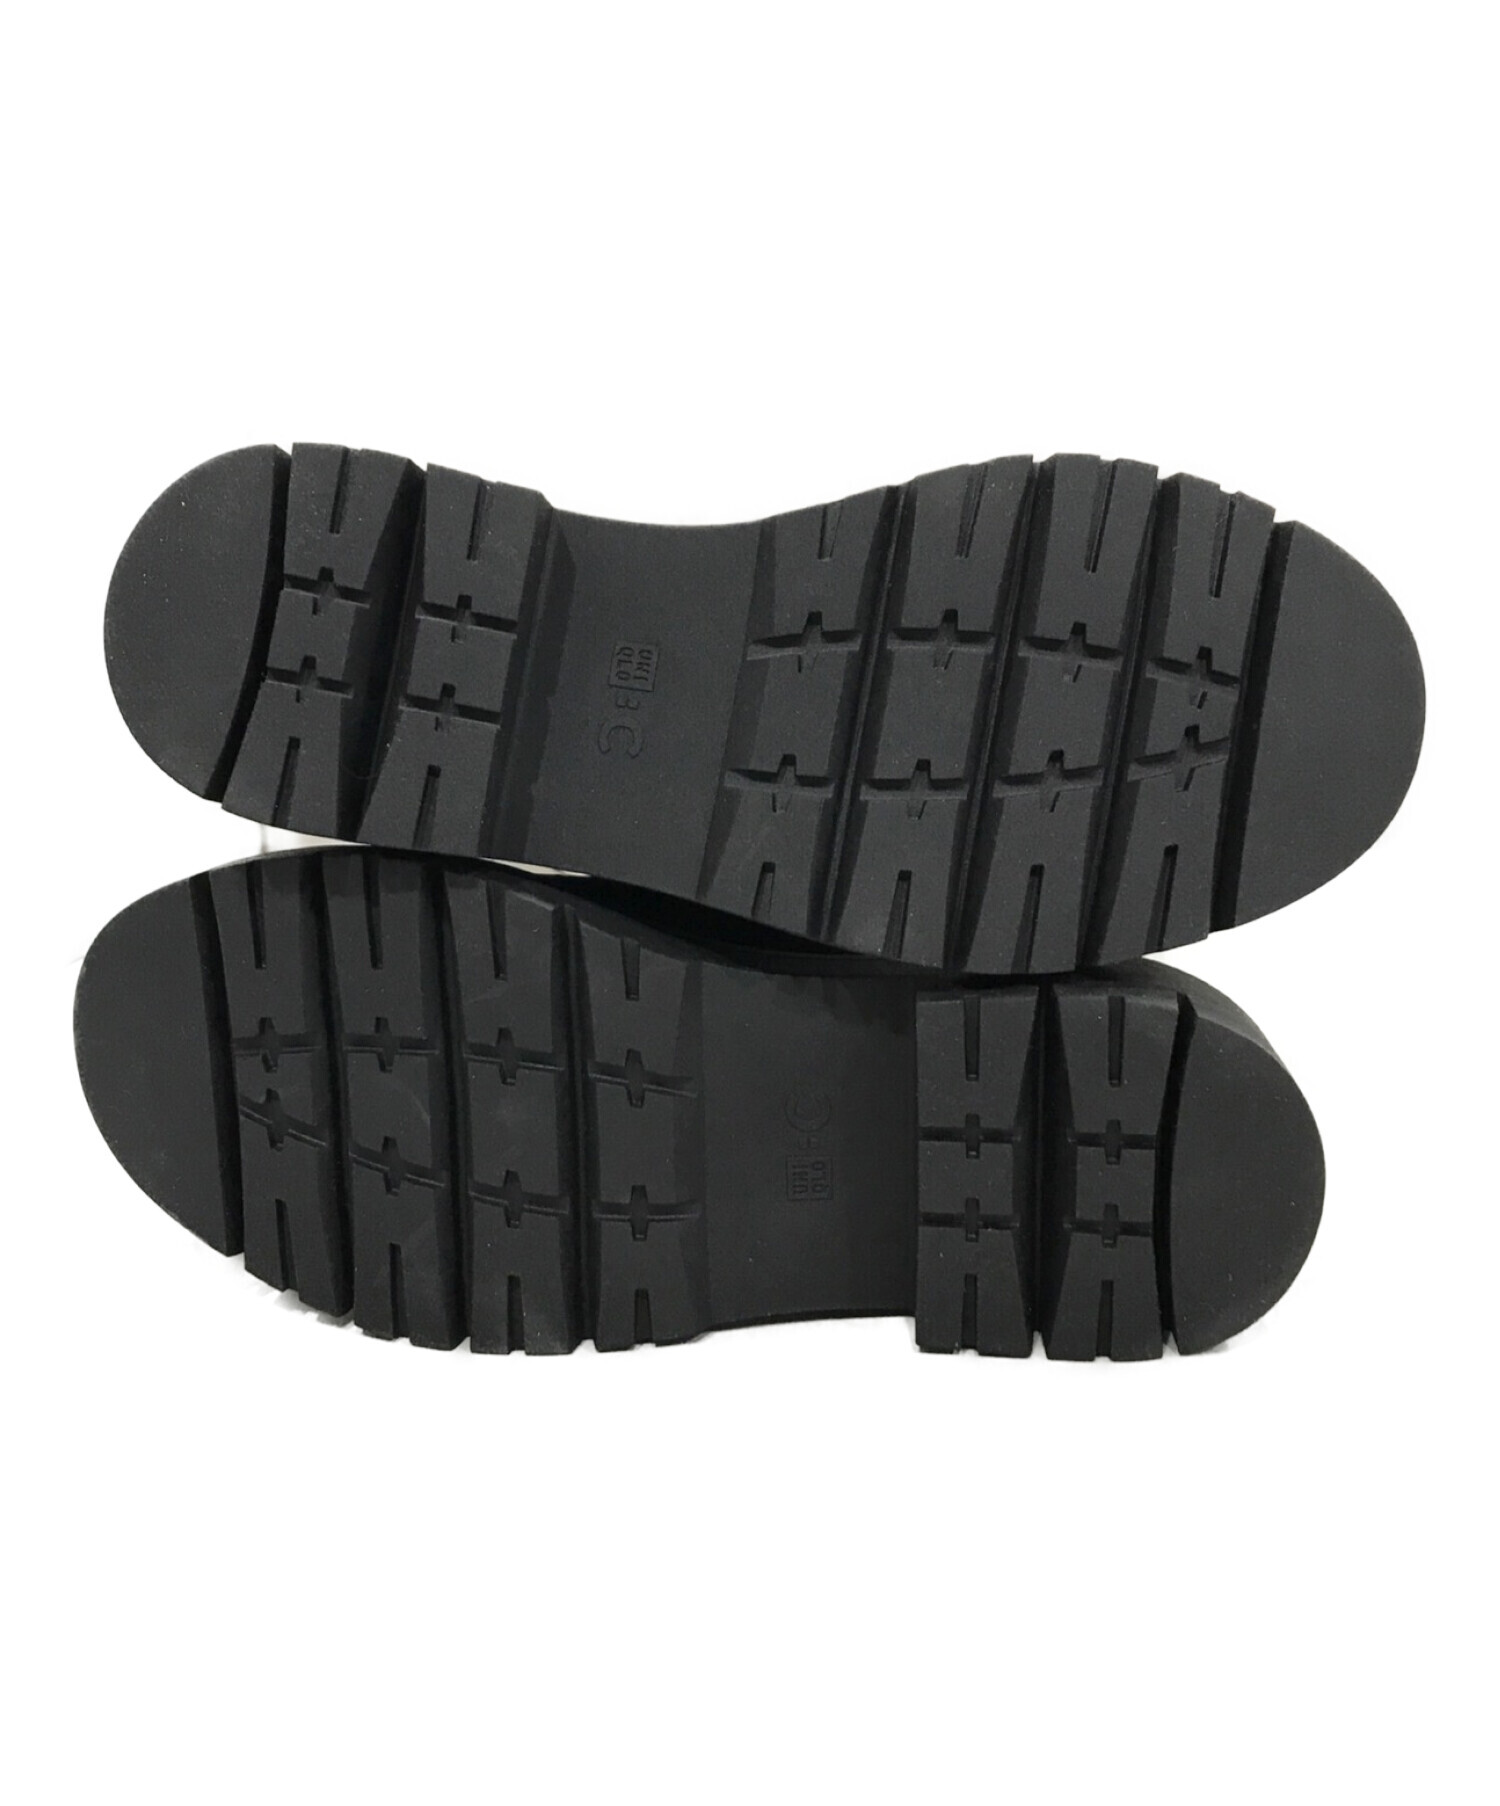 UNIQLO:C (ユニクロ:シー) コンフィールタッチロングブーツ ブラック サイズ:23.5㎝